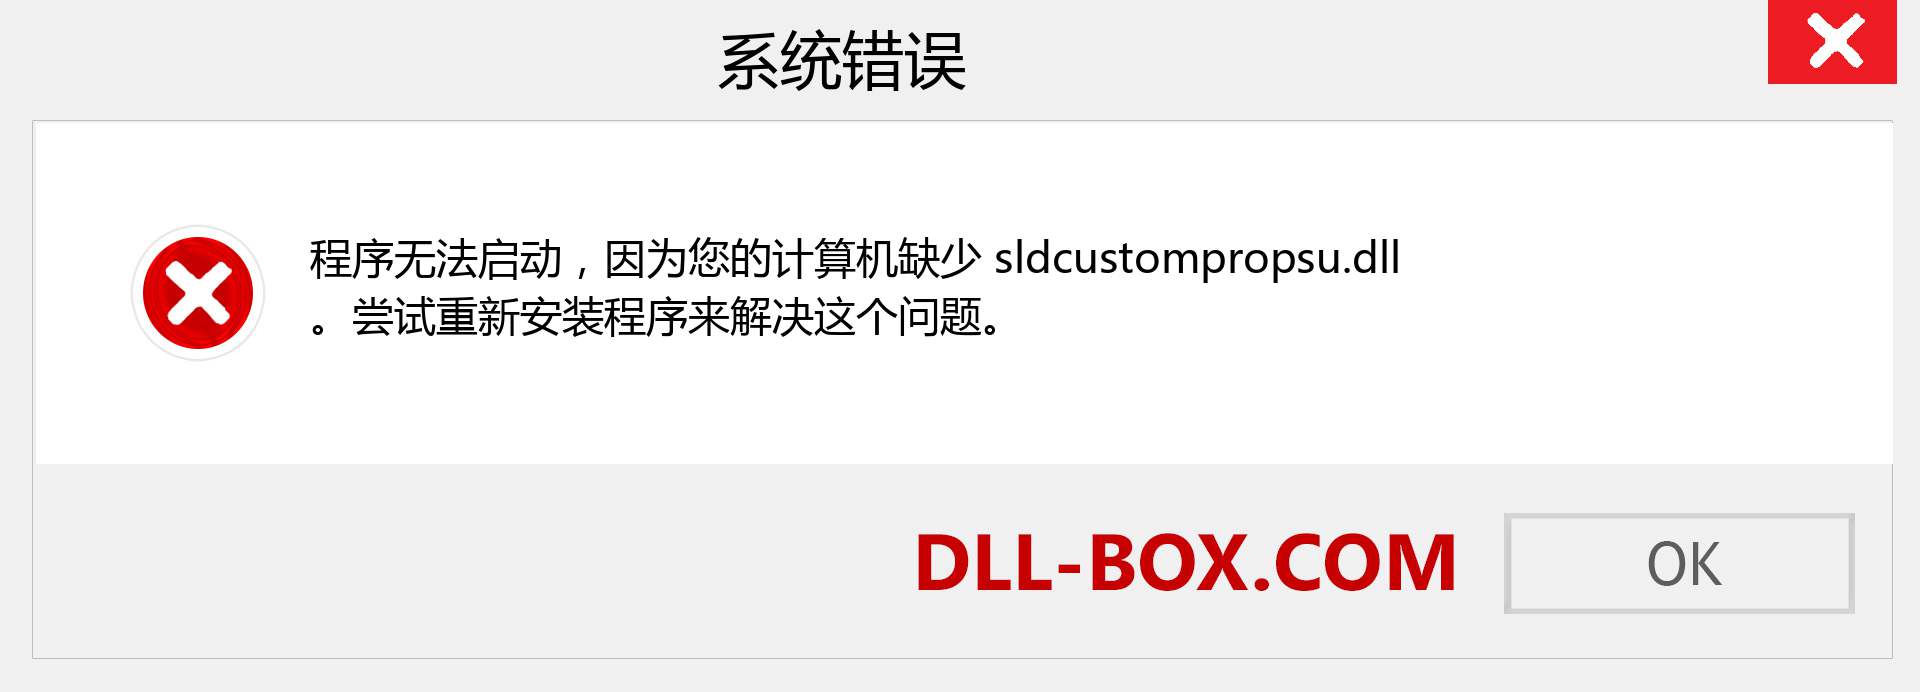 sldcustompropsu.dll 文件丢失？。 适用于 Windows 7、8、10 的下载 - 修复 Windows、照片、图像上的 sldcustompropsu dll 丢失错误